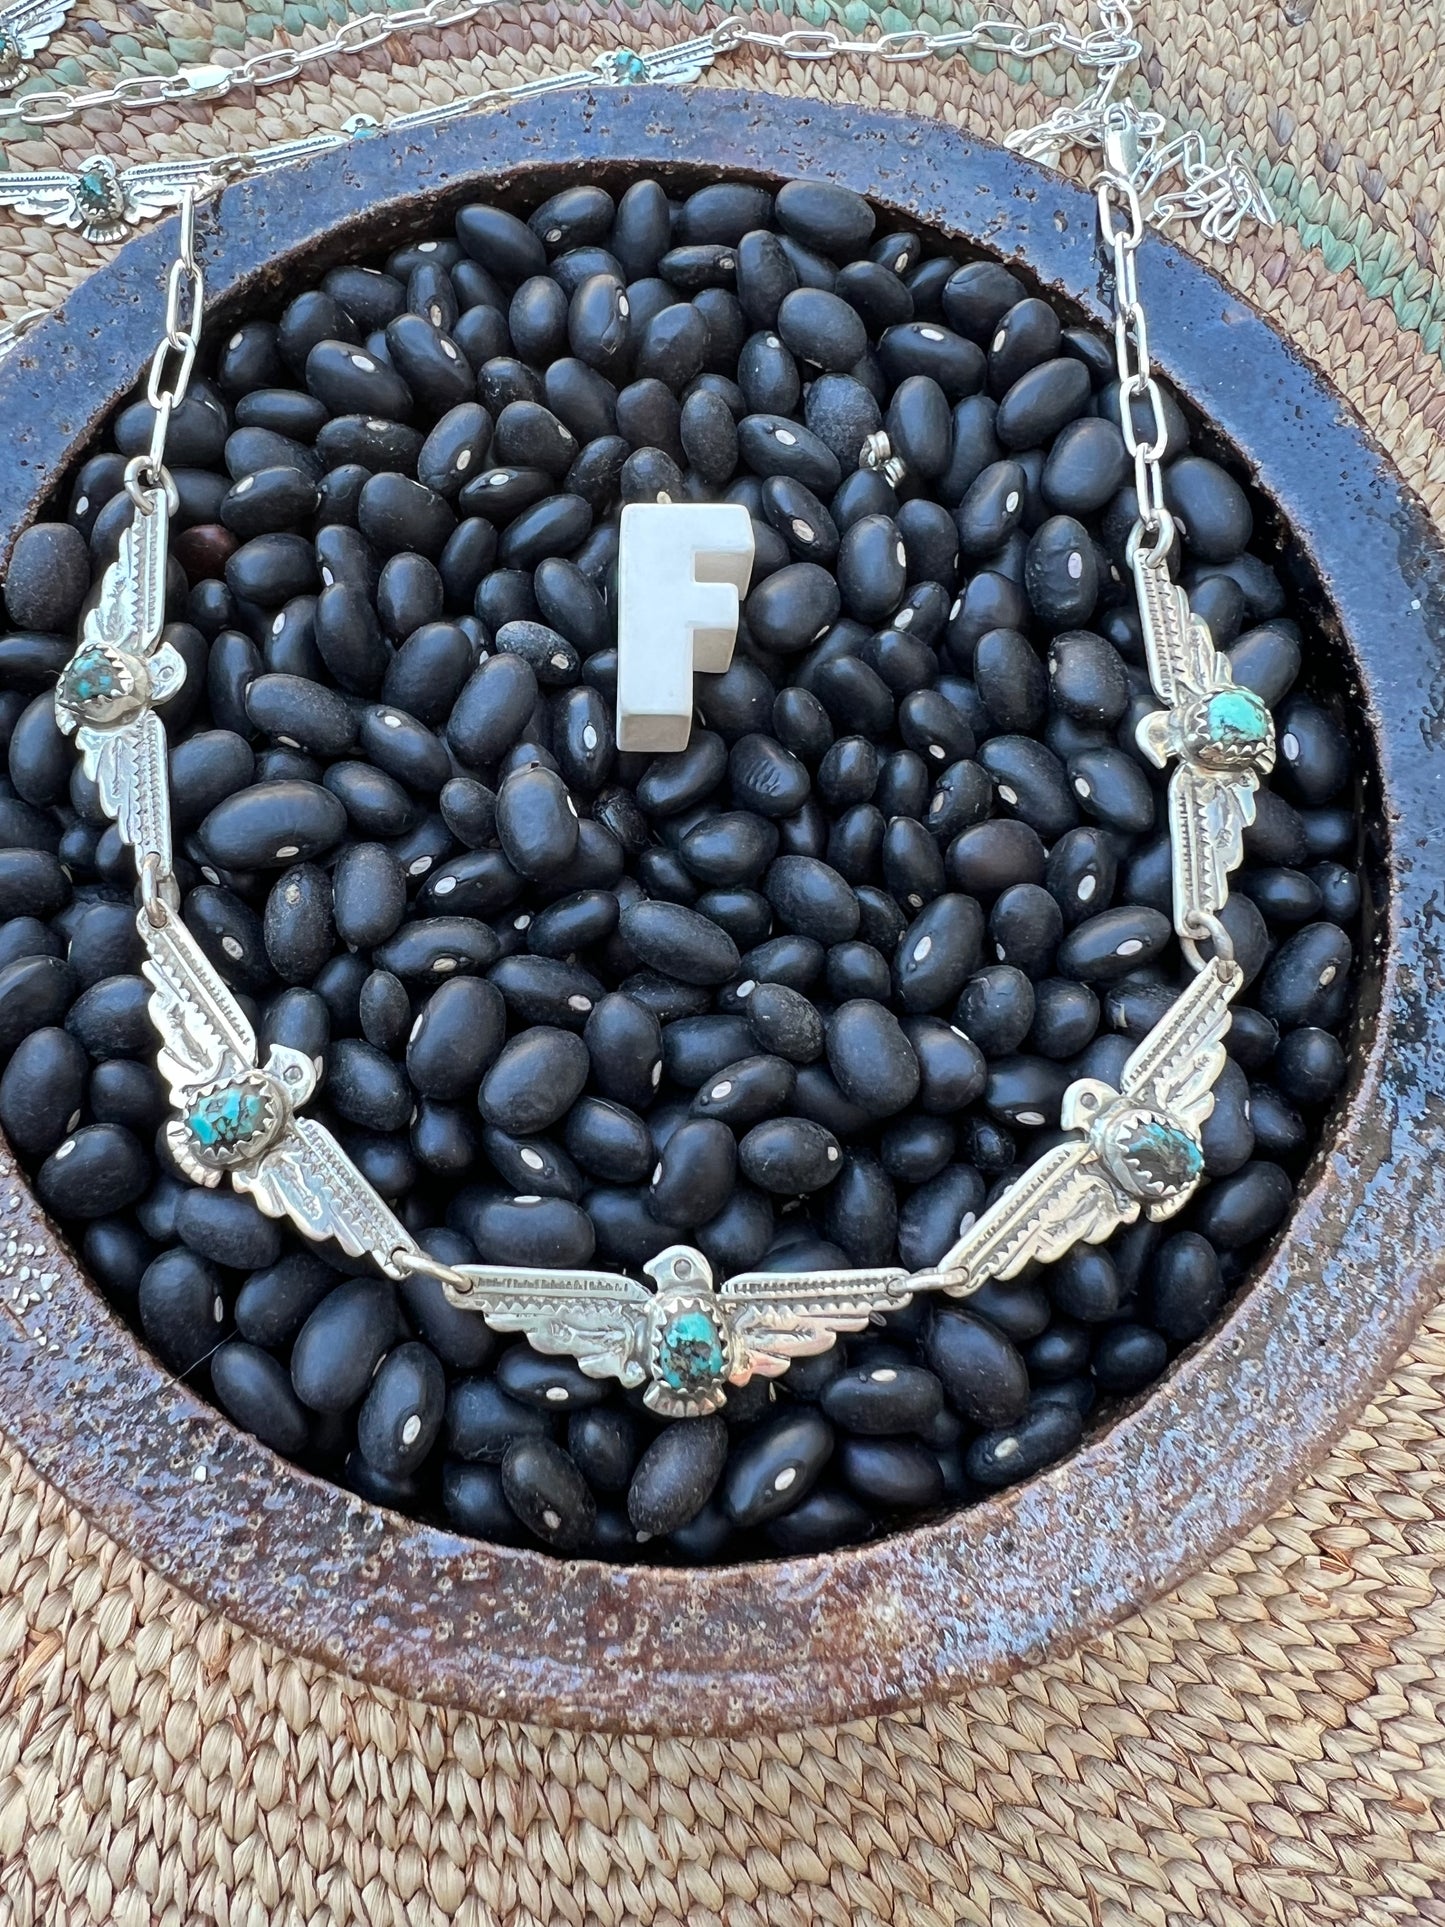 Turquoise Thunderbird  Choker Necklace